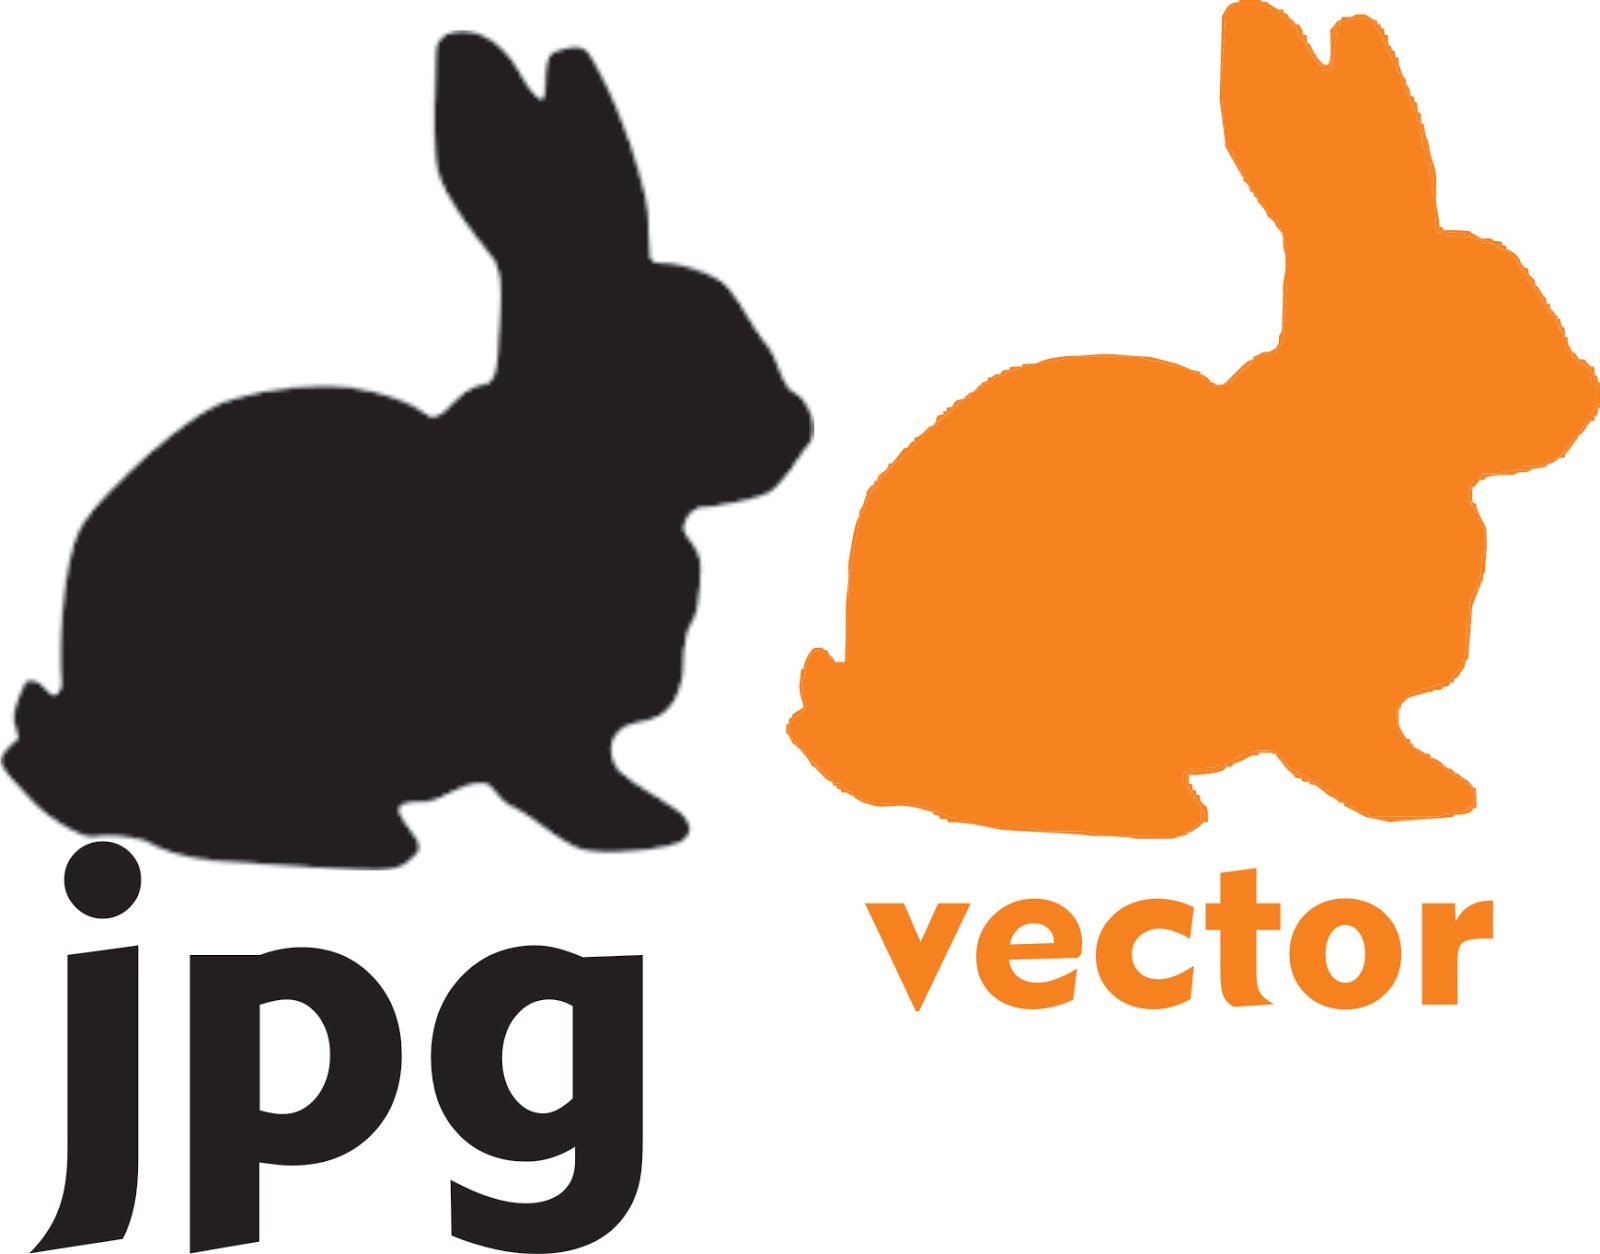 Cara Mengubah Gambar JPG Menjadi Vector Untuk Anak / Pemula